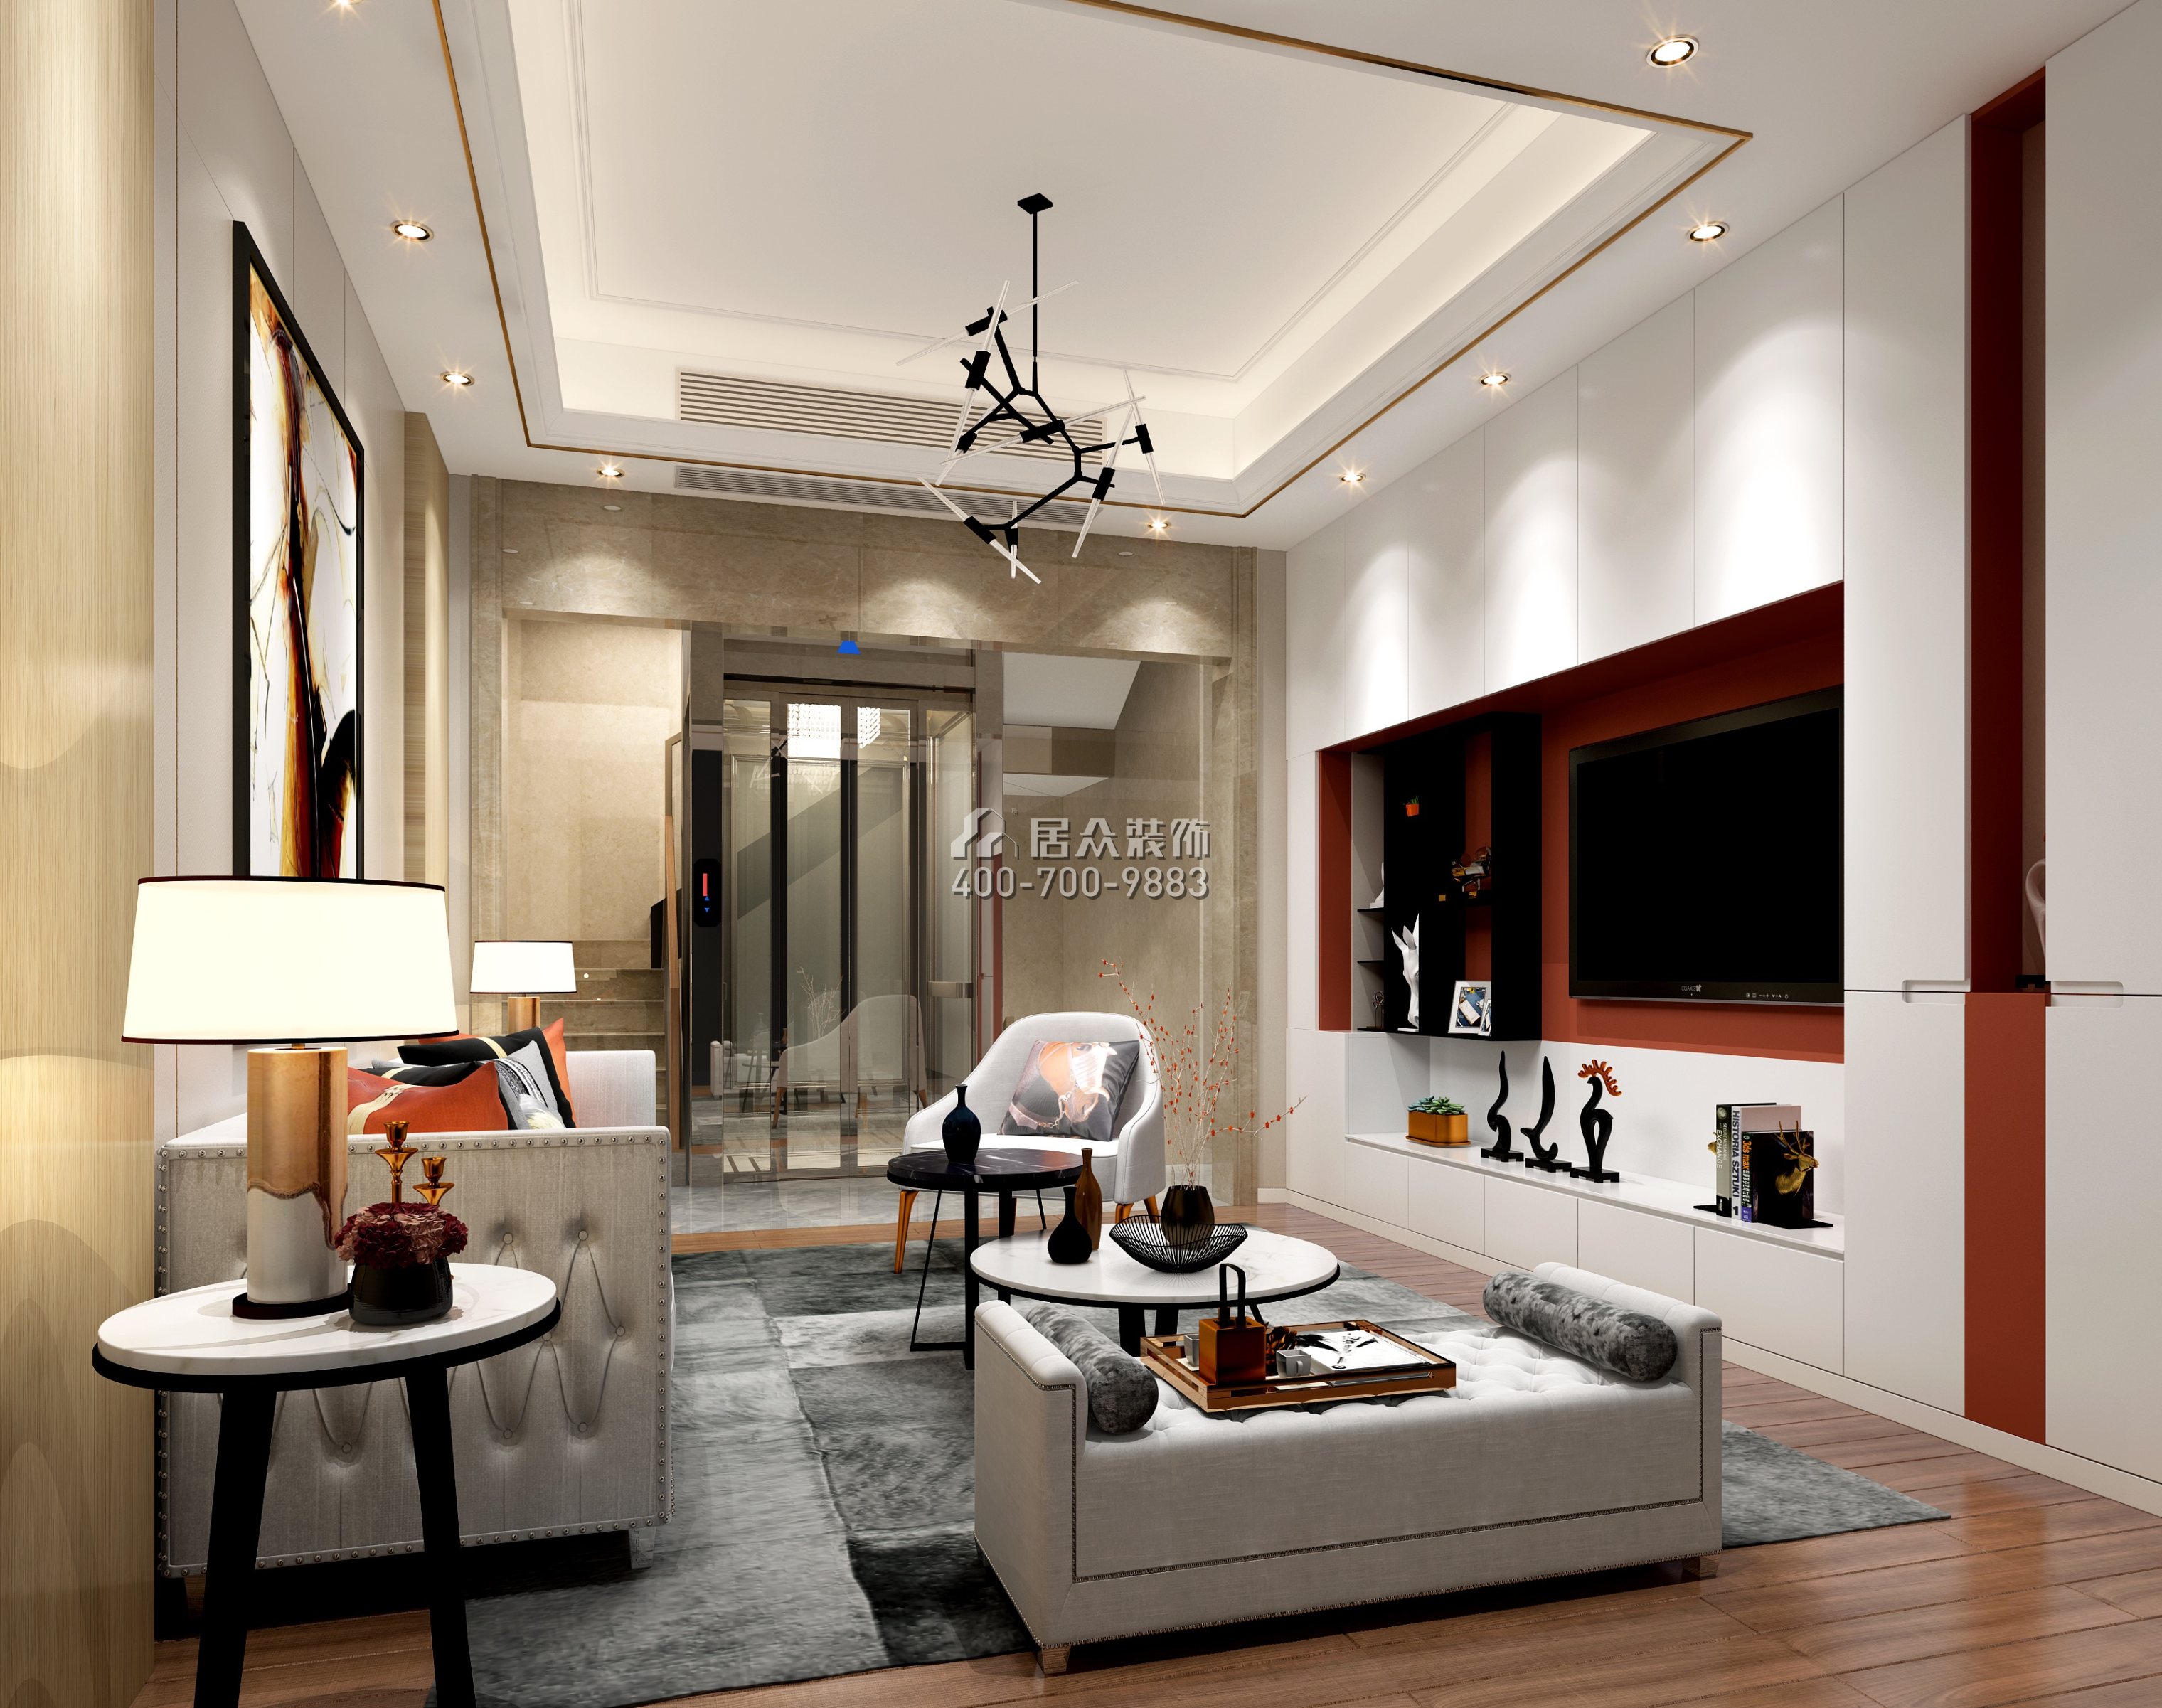 鼎峰尚境600平方米現代簡約風格別墅戶型客廳裝修效果圖